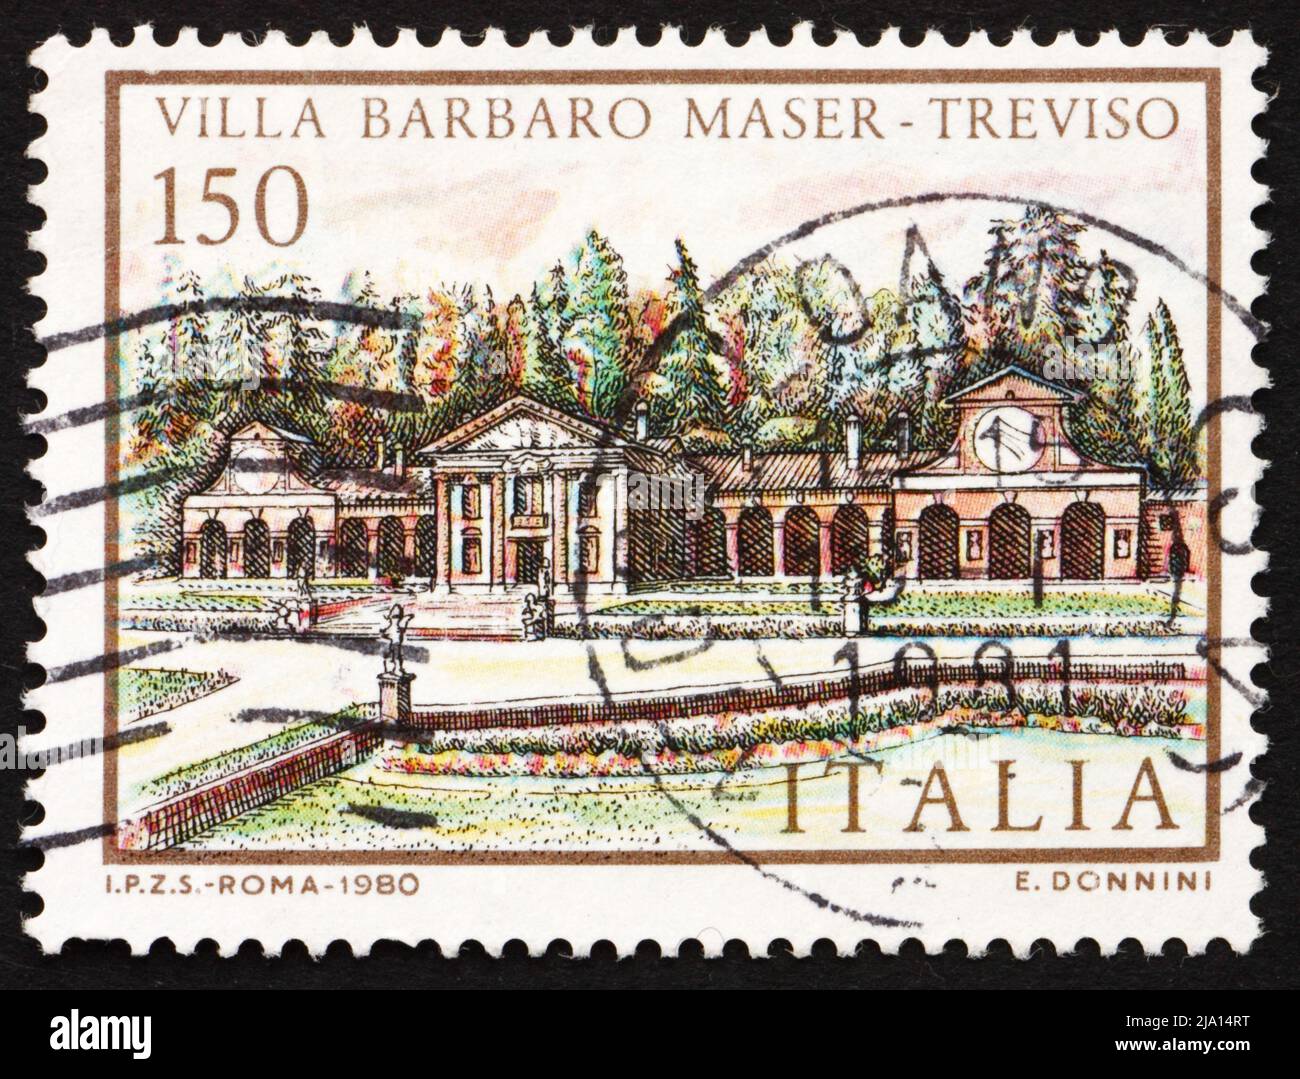 ITALIEN - UM 1980: Eine in Italien gedruckte Briefmarke zeigt Villa Barbaro Maser, Treviso, Italia, um 1980 Stockfoto